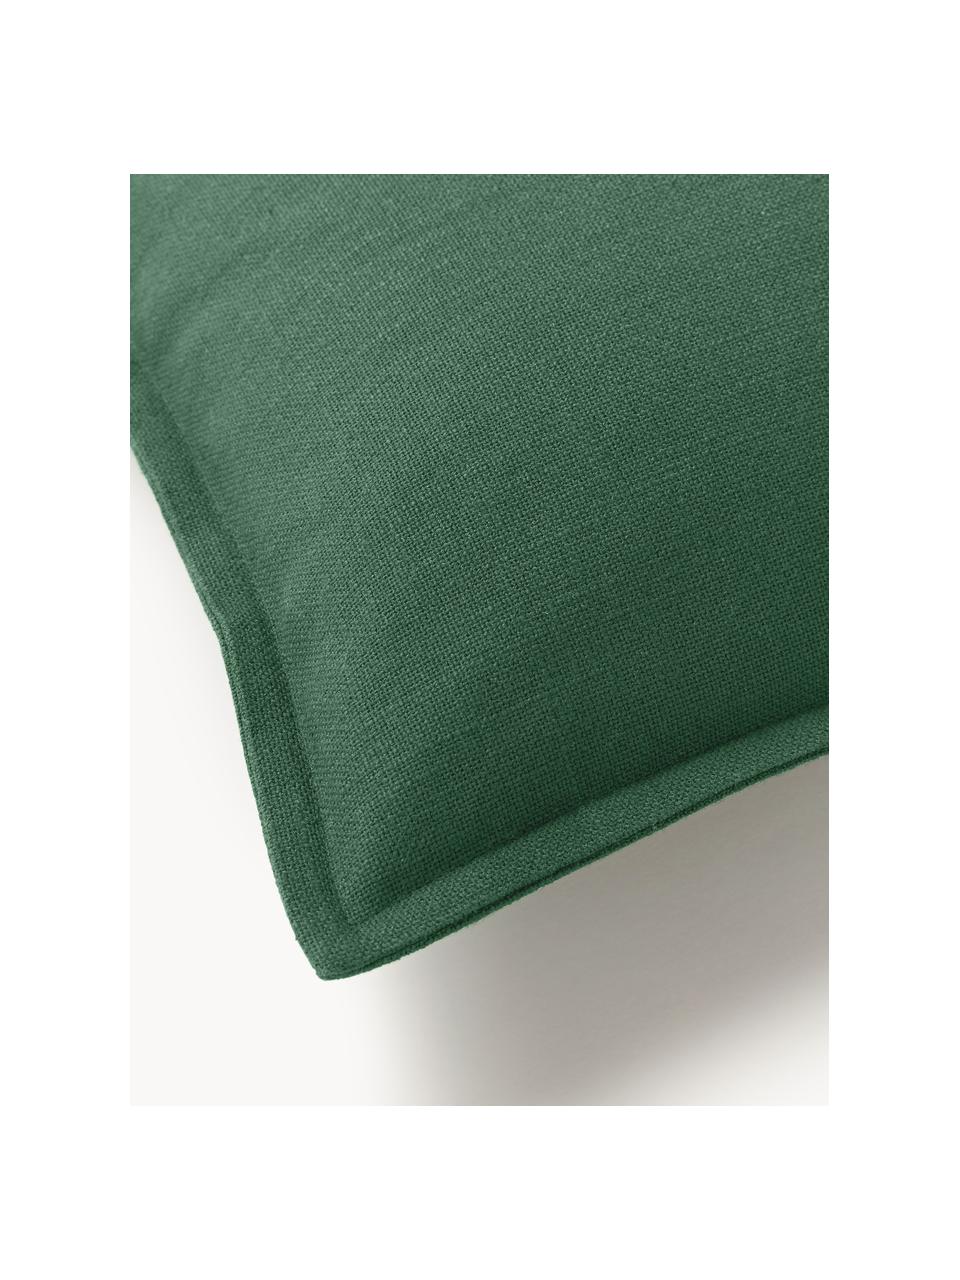 Poszewka na poduszkę z bawełny Vicky, 100% bawełna, Ciemny zielony, S 30 x D 50 cm